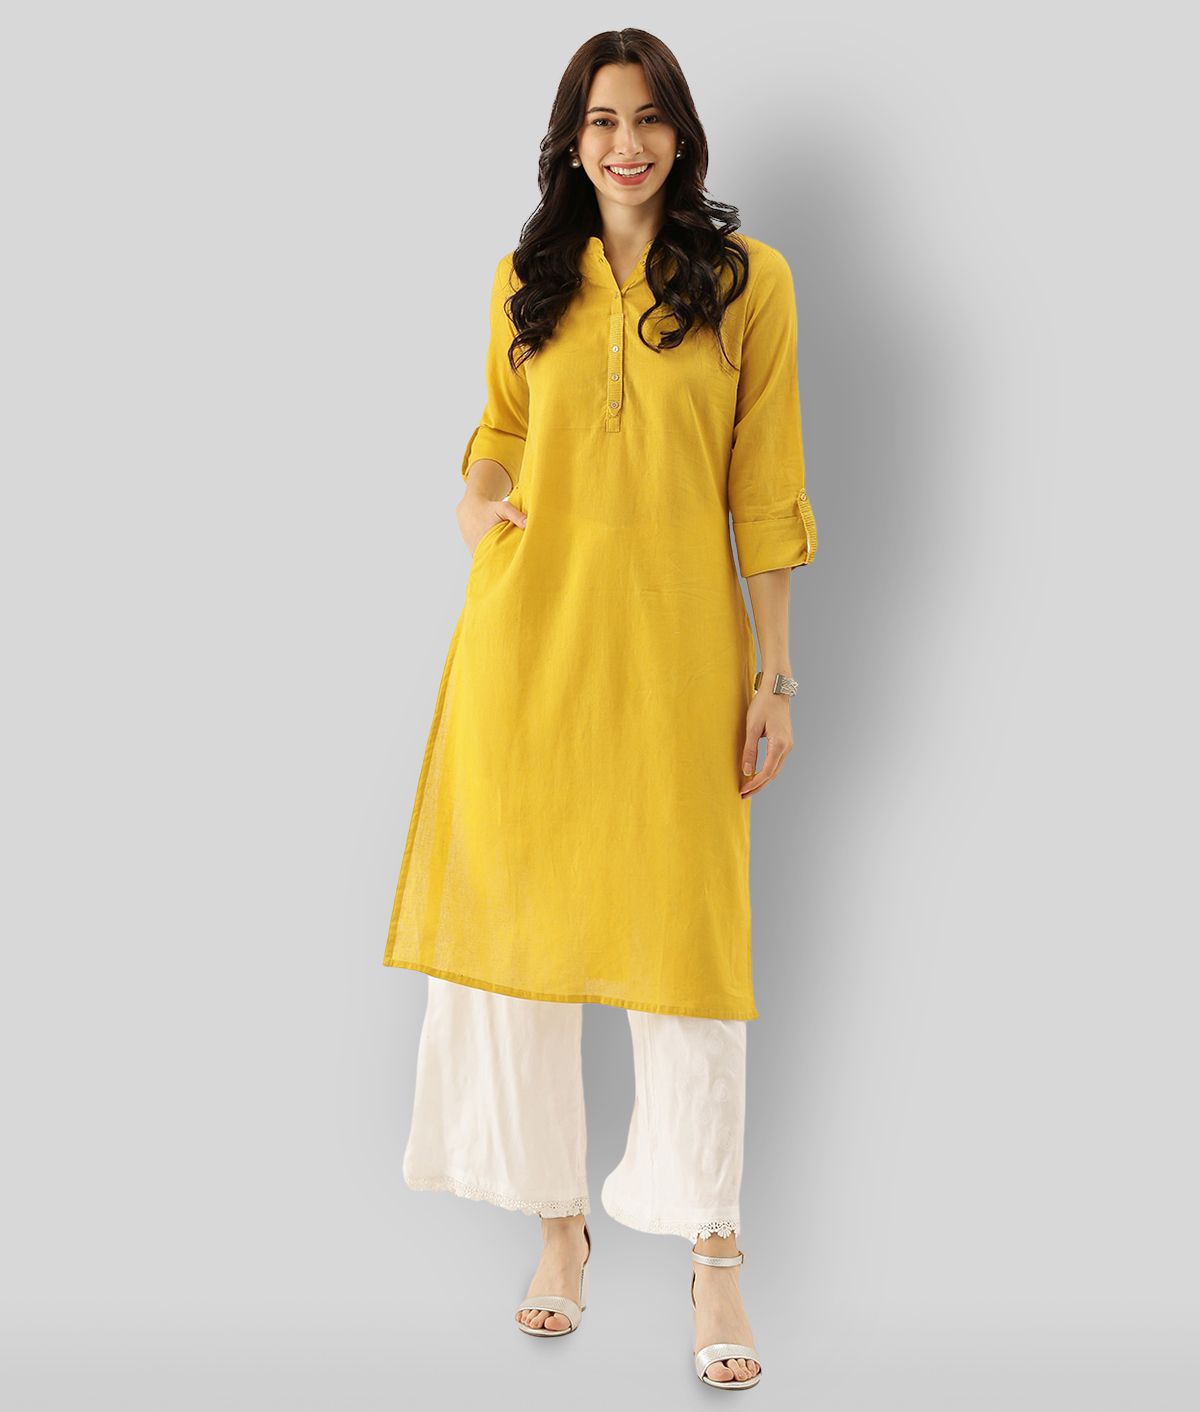     			Divena - Yellow Cotton Women's Straight Kurti ( Pack of 1 )